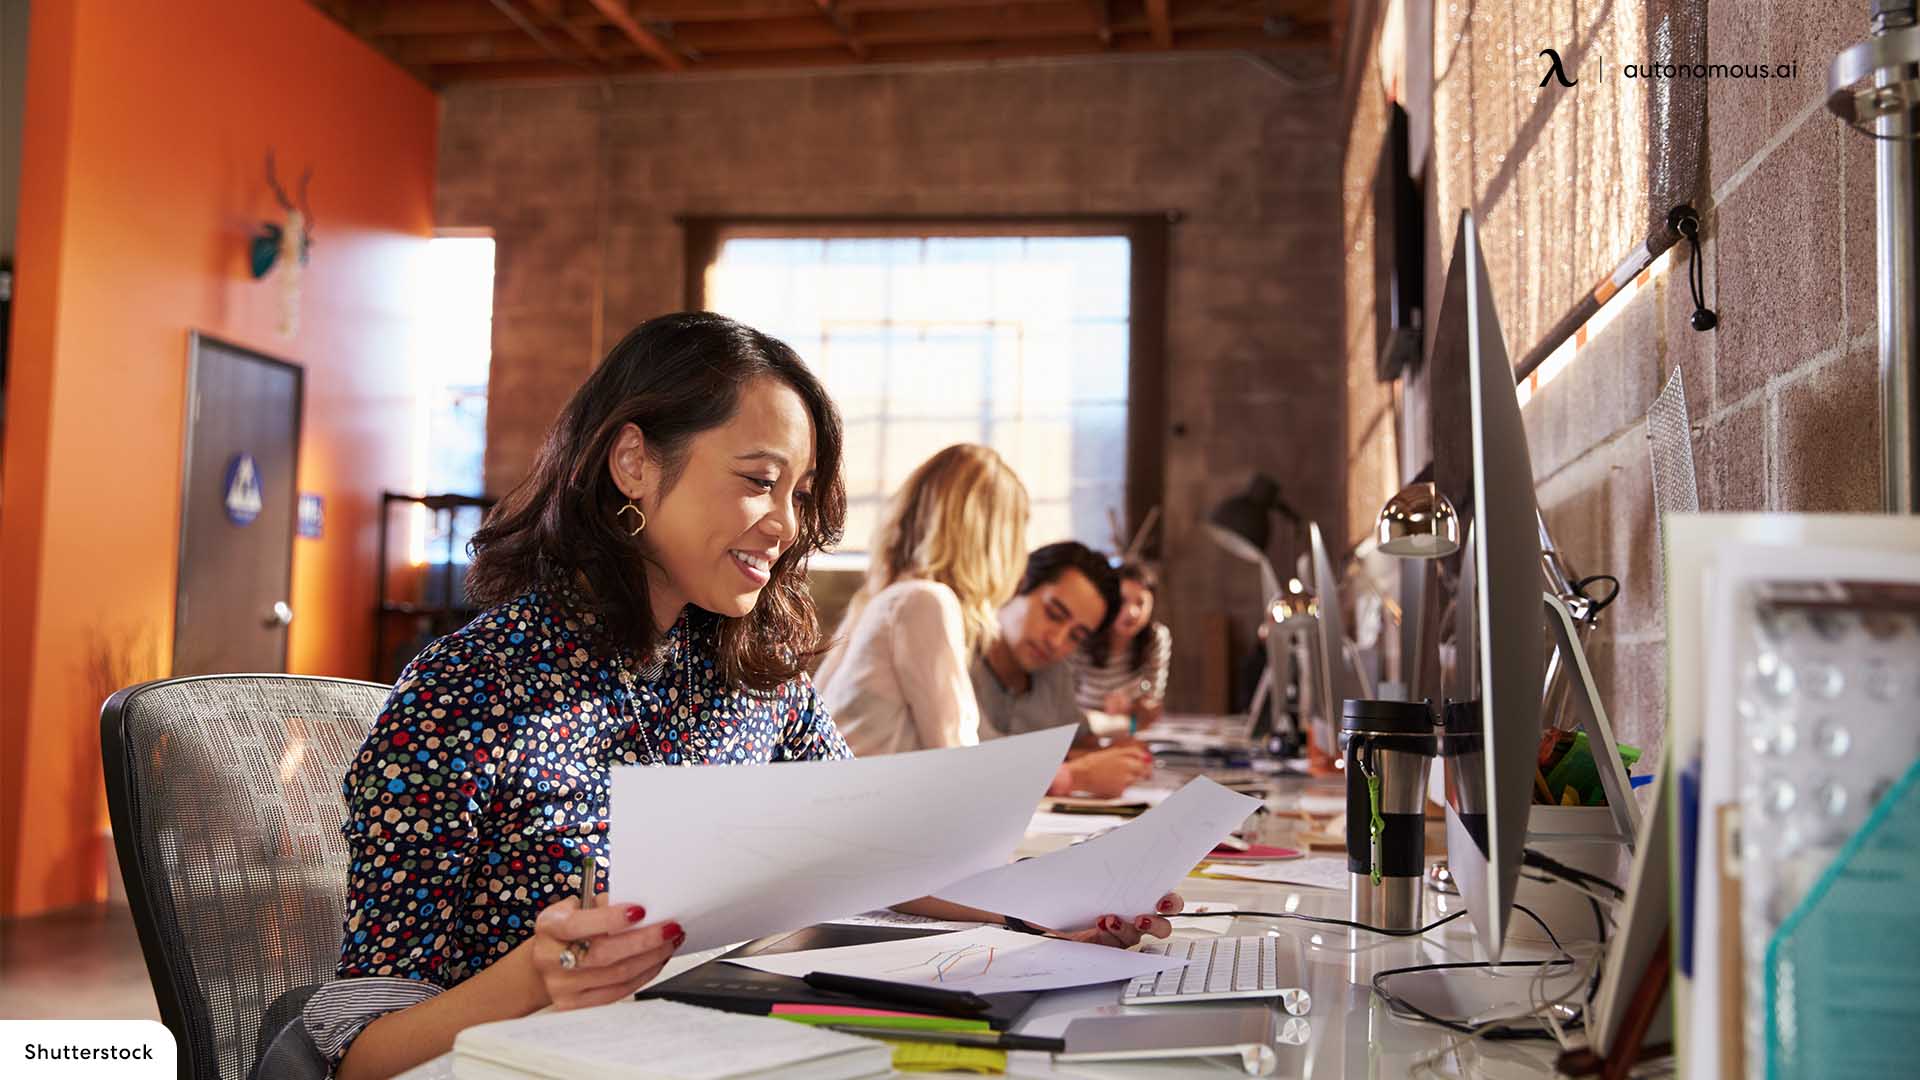 10 Best Extra-Long Office Desks for Shared Work Settings